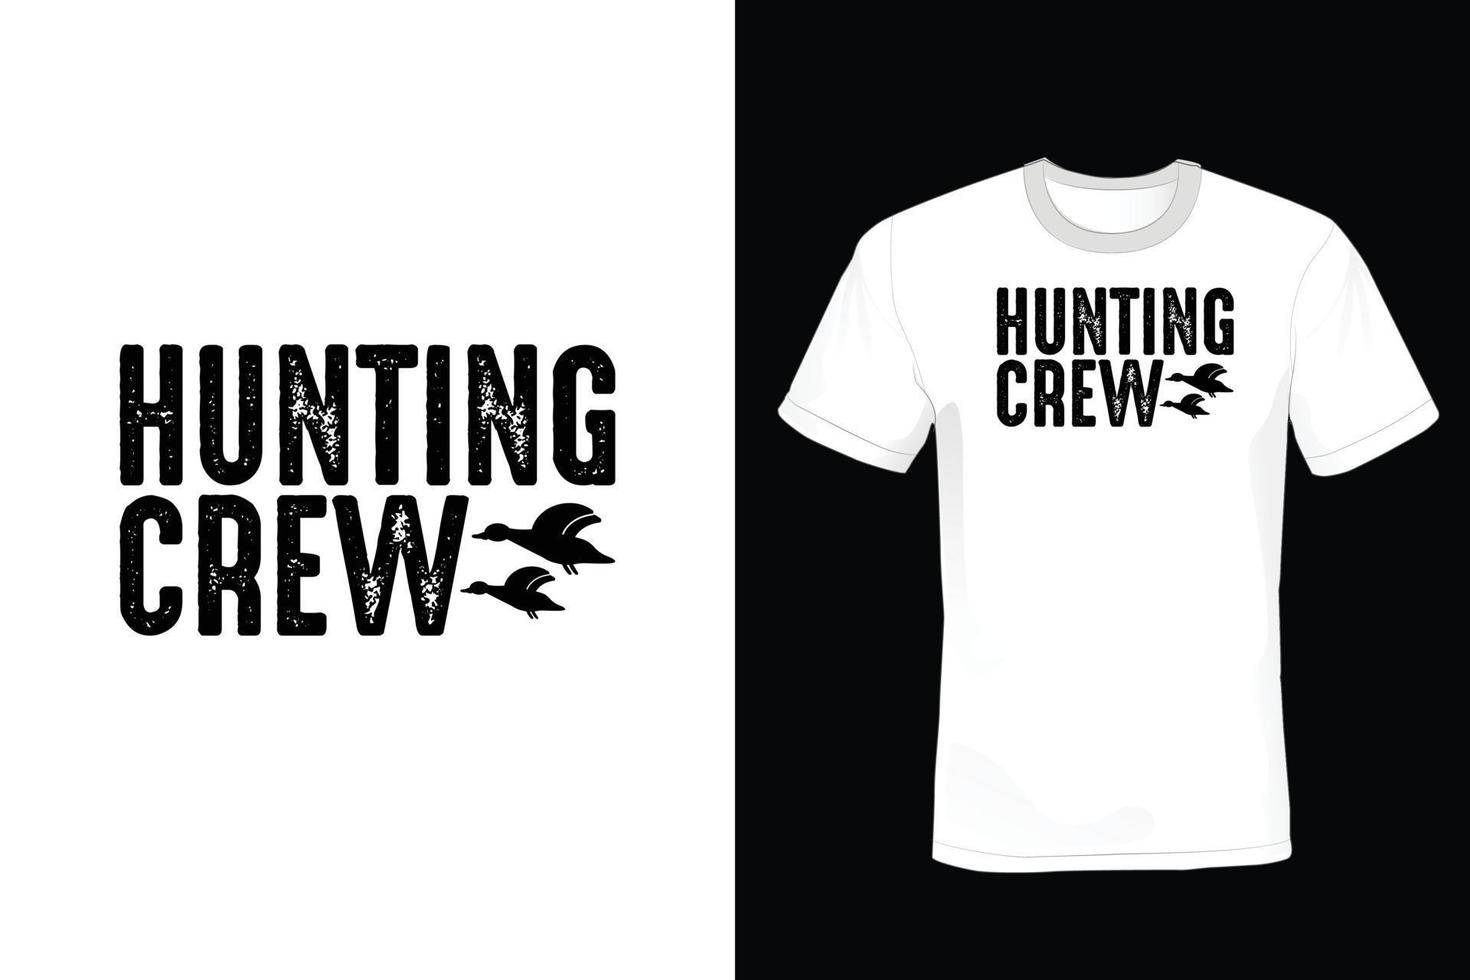 conception de t-shirt de chasse, vintage, typographie vecteur